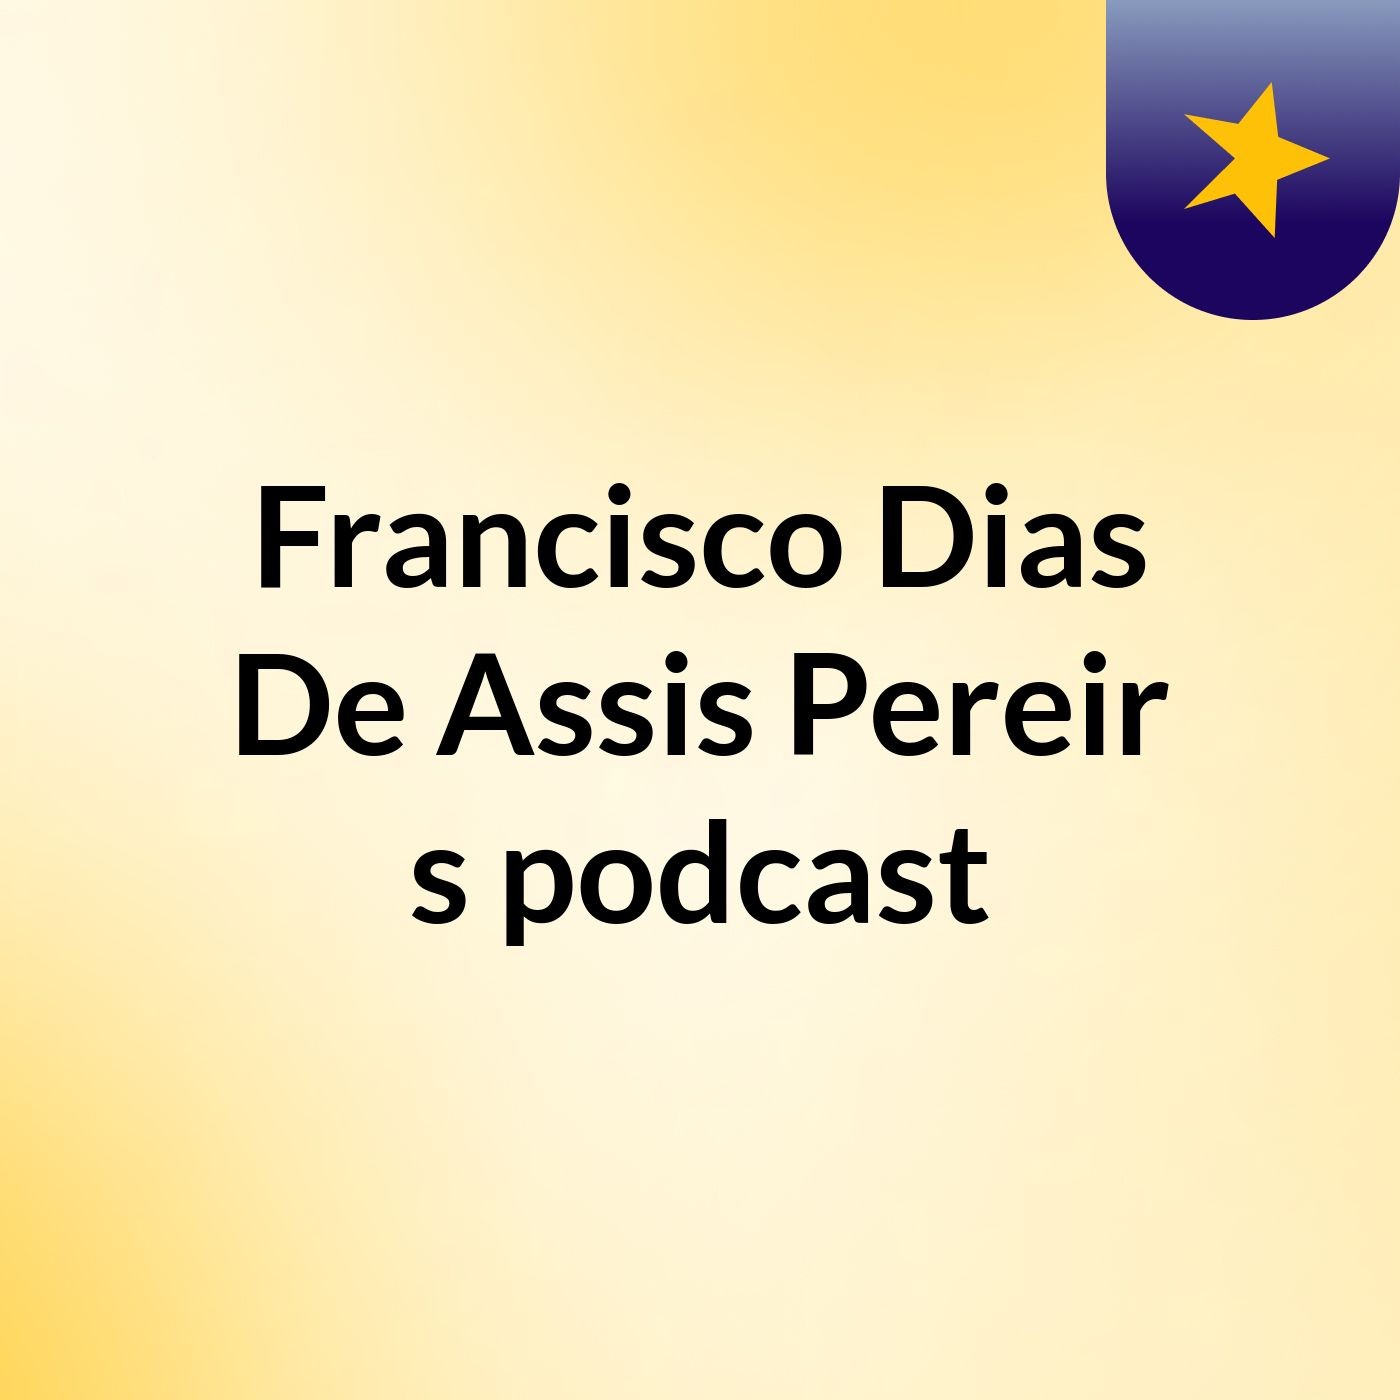 Francisco Dias De Assis Pereir's podcast